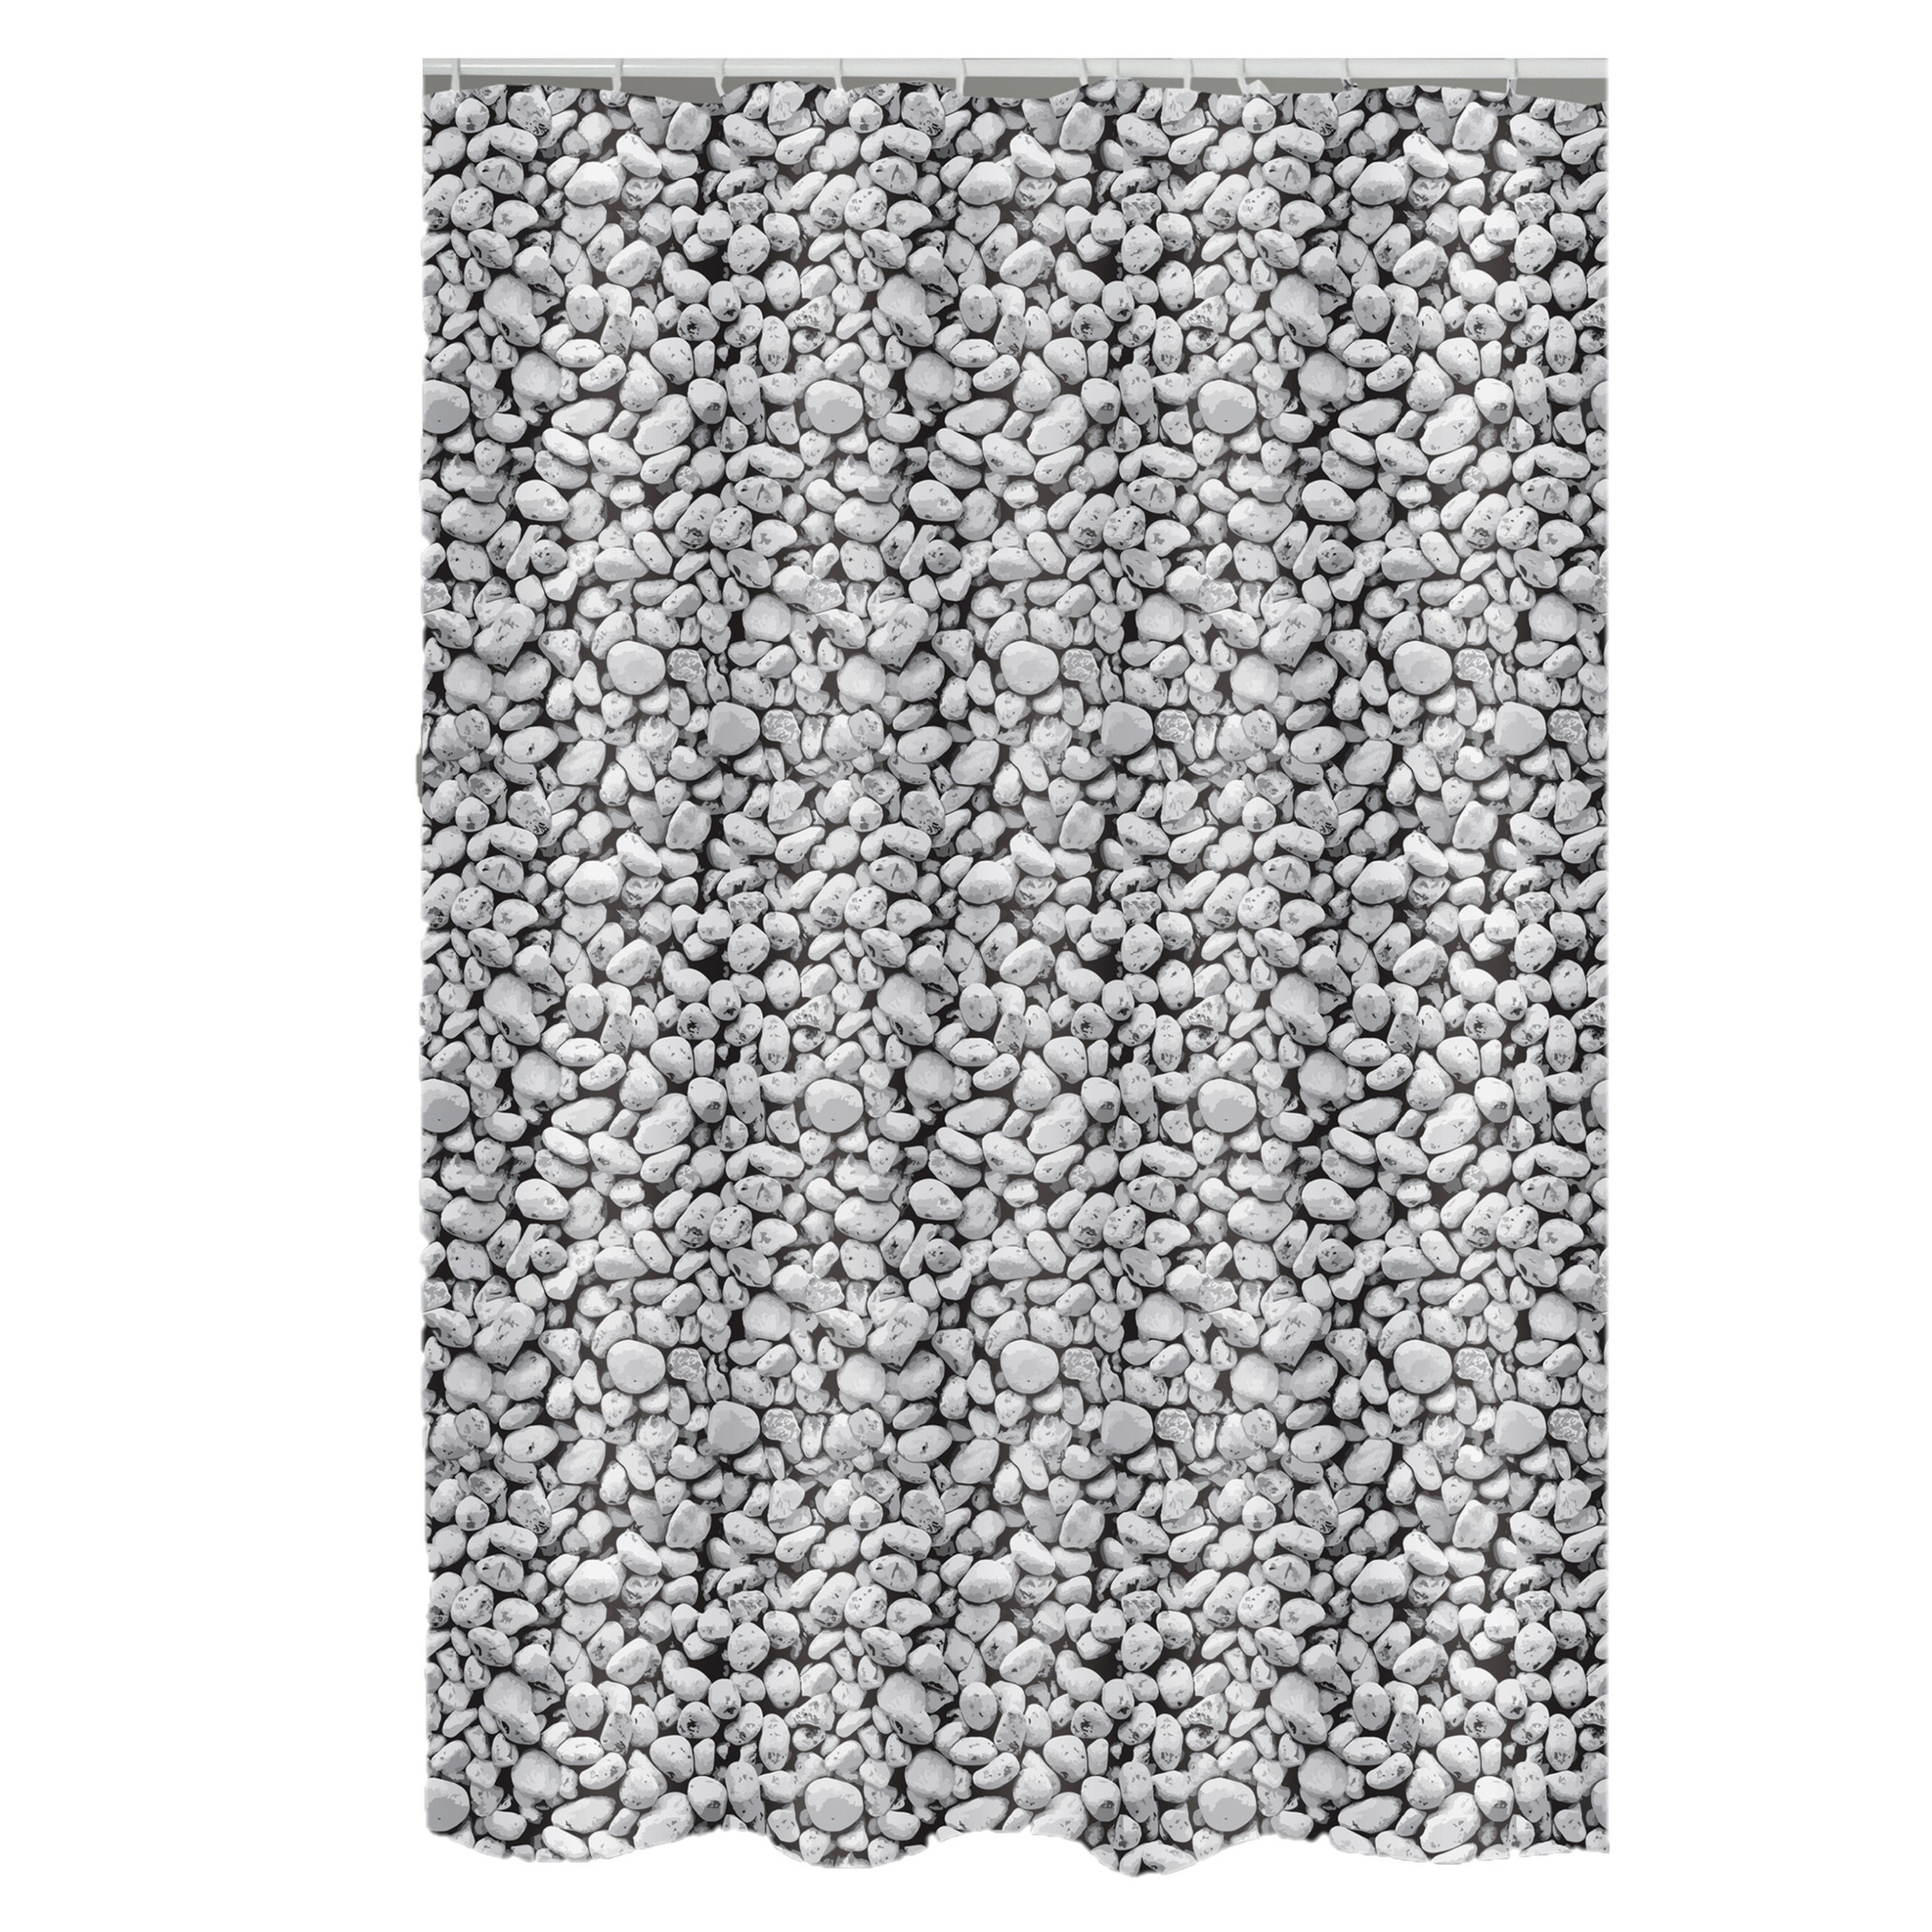 Douchegordijn grijs kiezels print Polyester 180 x 200 cm wasbaar